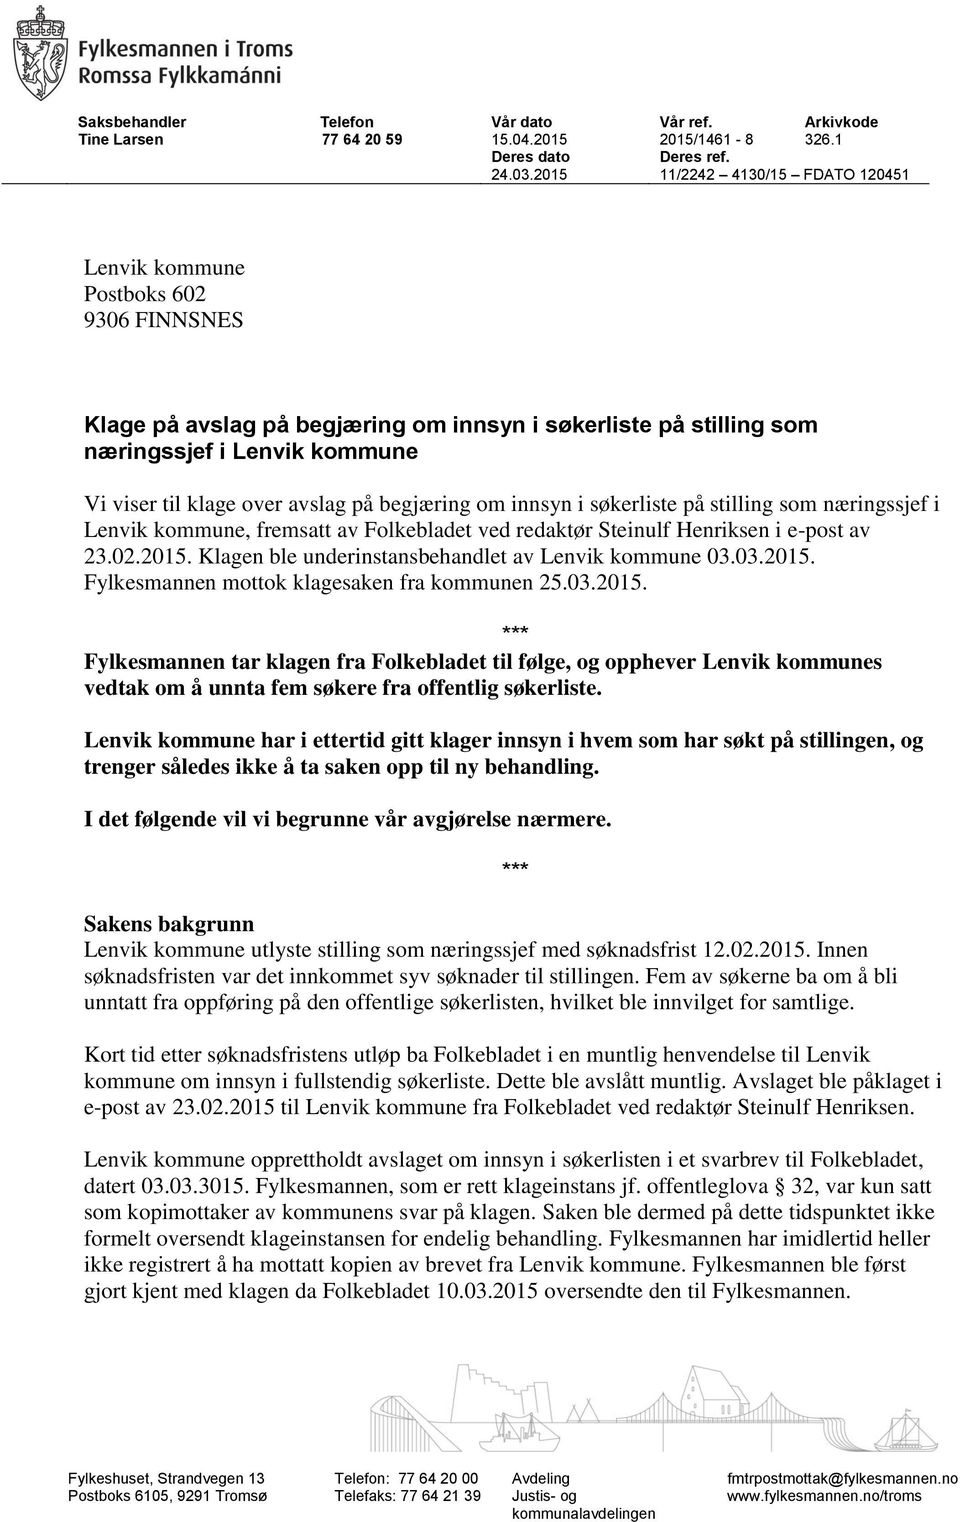 avslag på begjæring om innsyn i søkerliste på stilling som næringssjef i Lenvik kommune, fremsatt av Folkebladet ved redaktør Steinulf Henriksen i e-post av 23.02.2015.